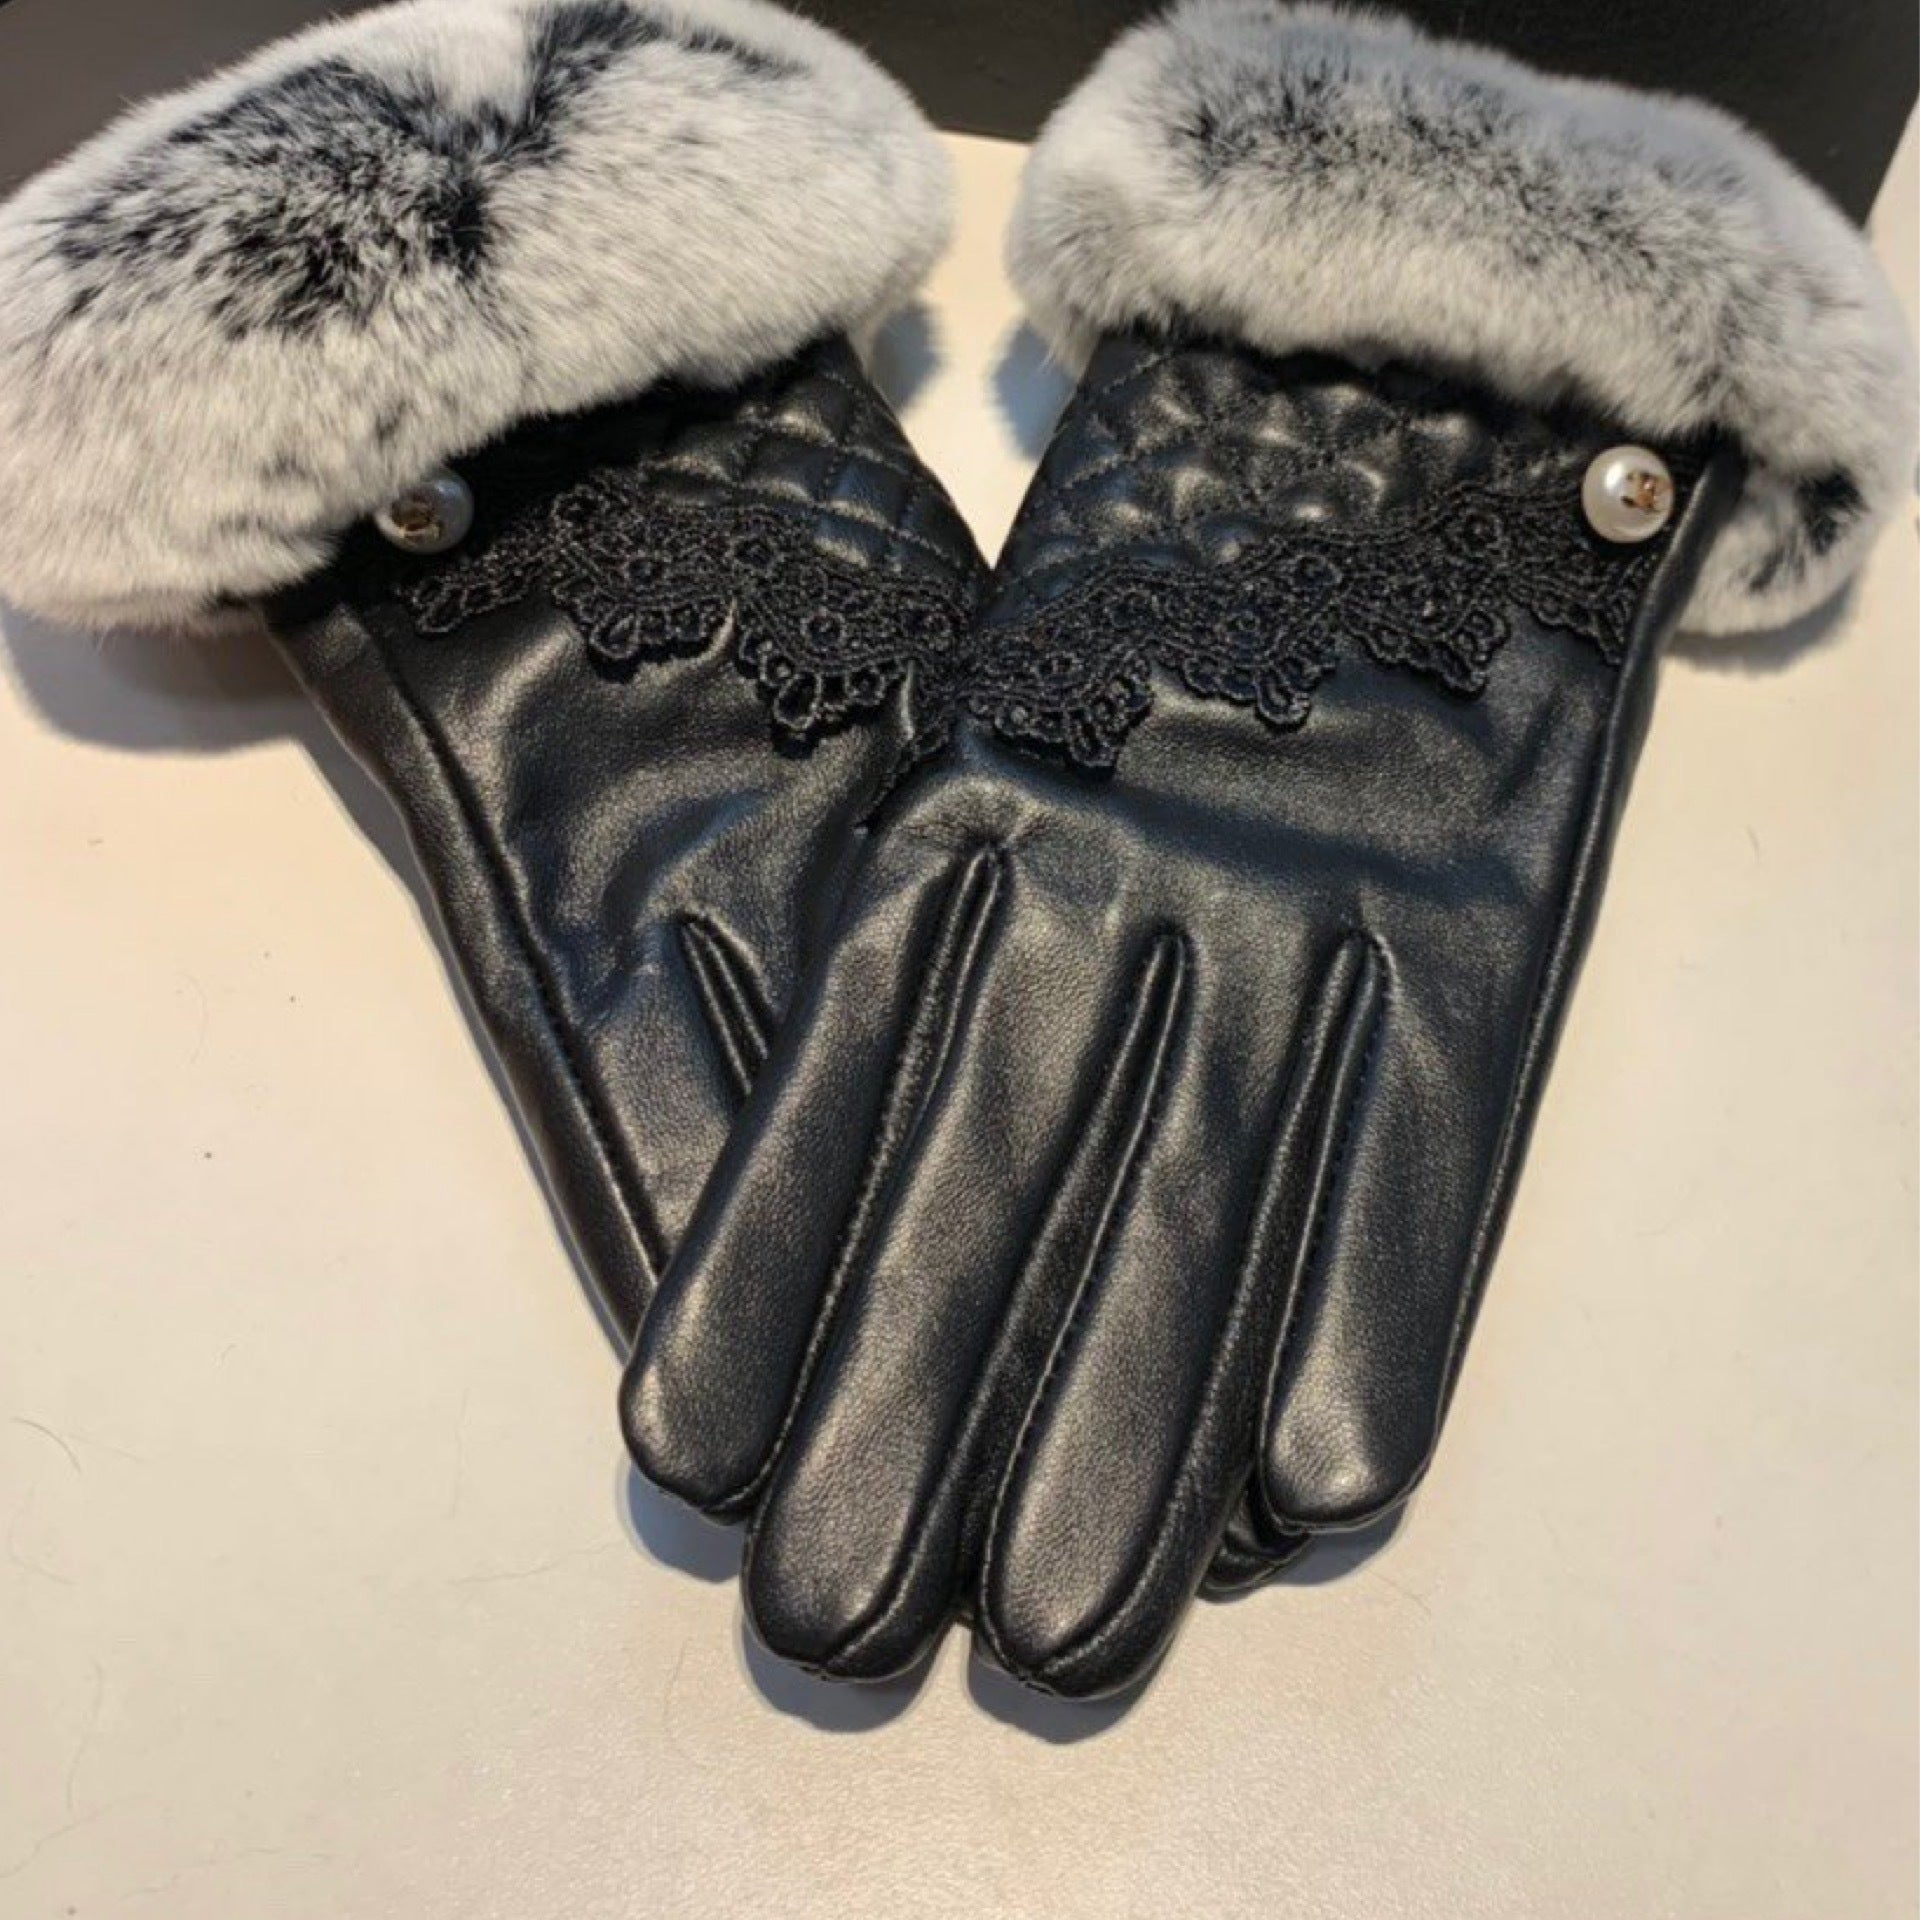 Chanel Rabbit Fur Trim Gloves